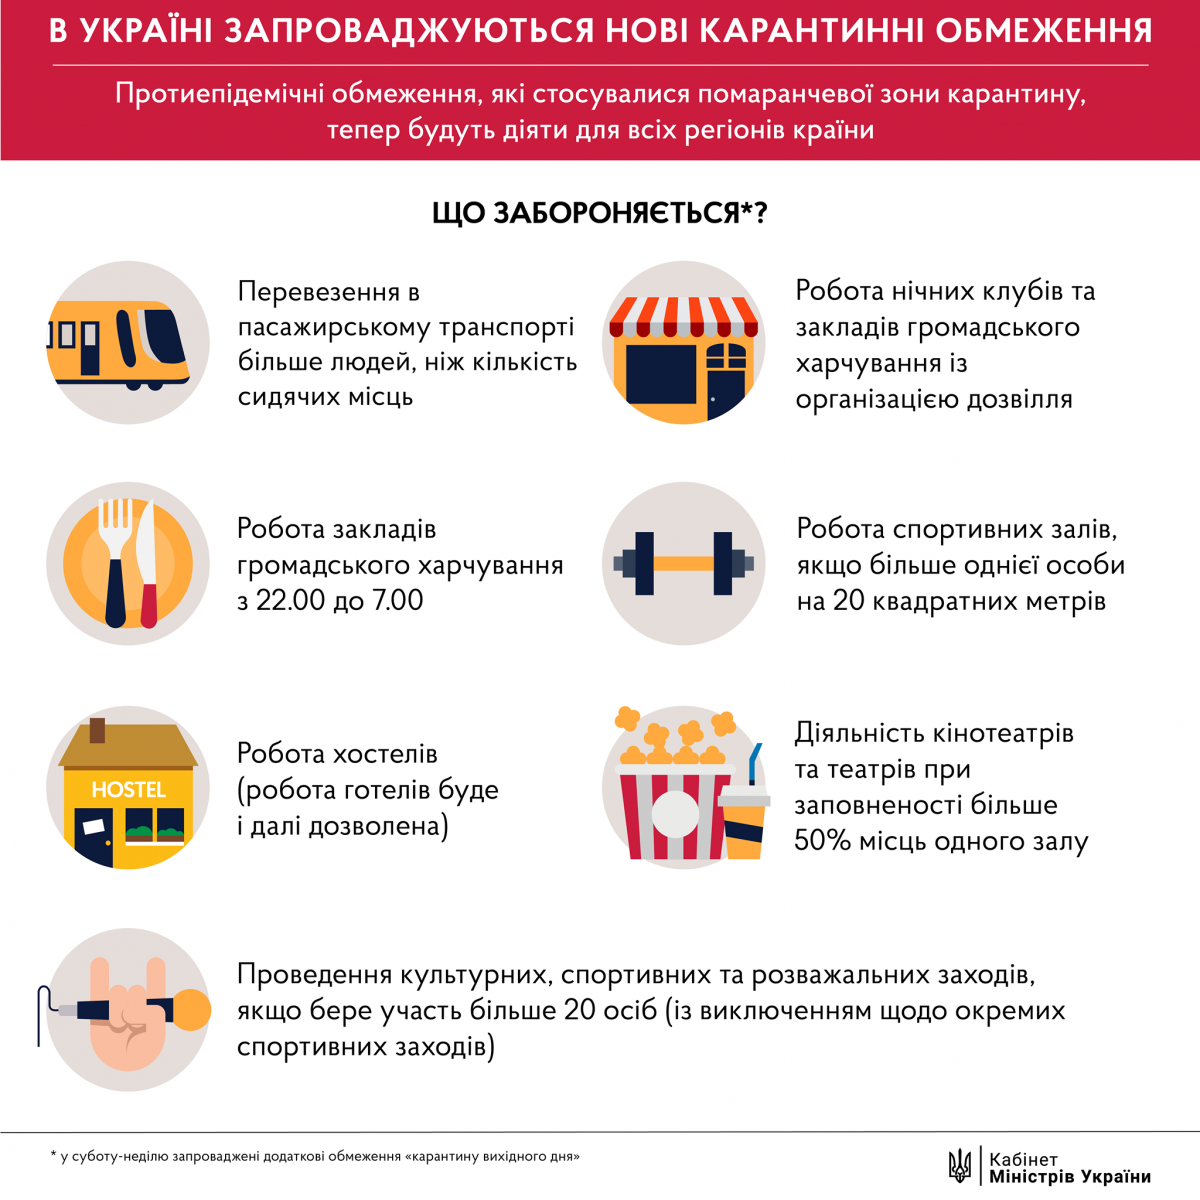 Інфографіка: Facebook/Кабінет міністрів України